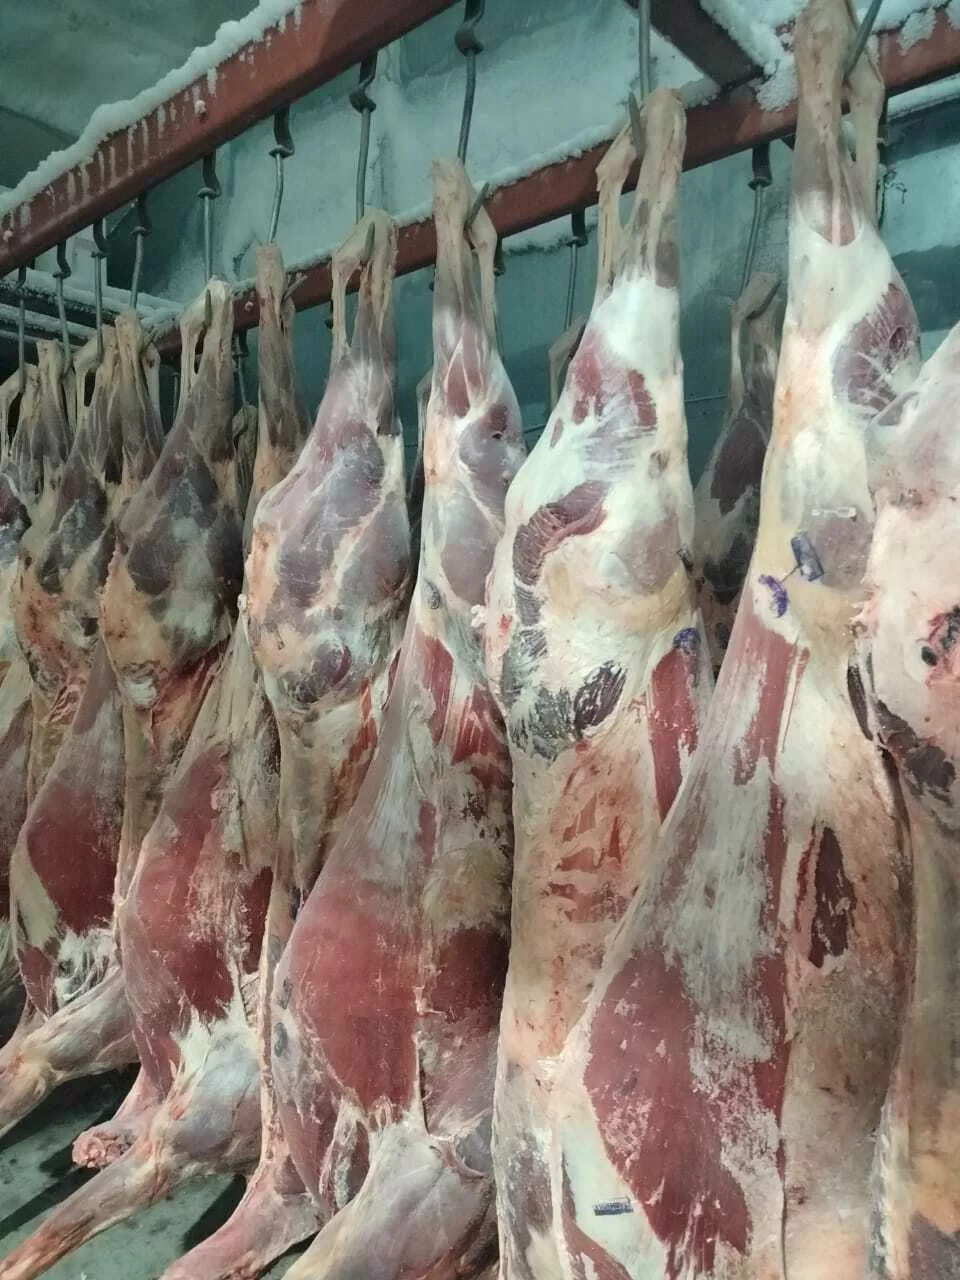 мясо марала в полутушах мороженное в Барнауле и Алтайском крае 5